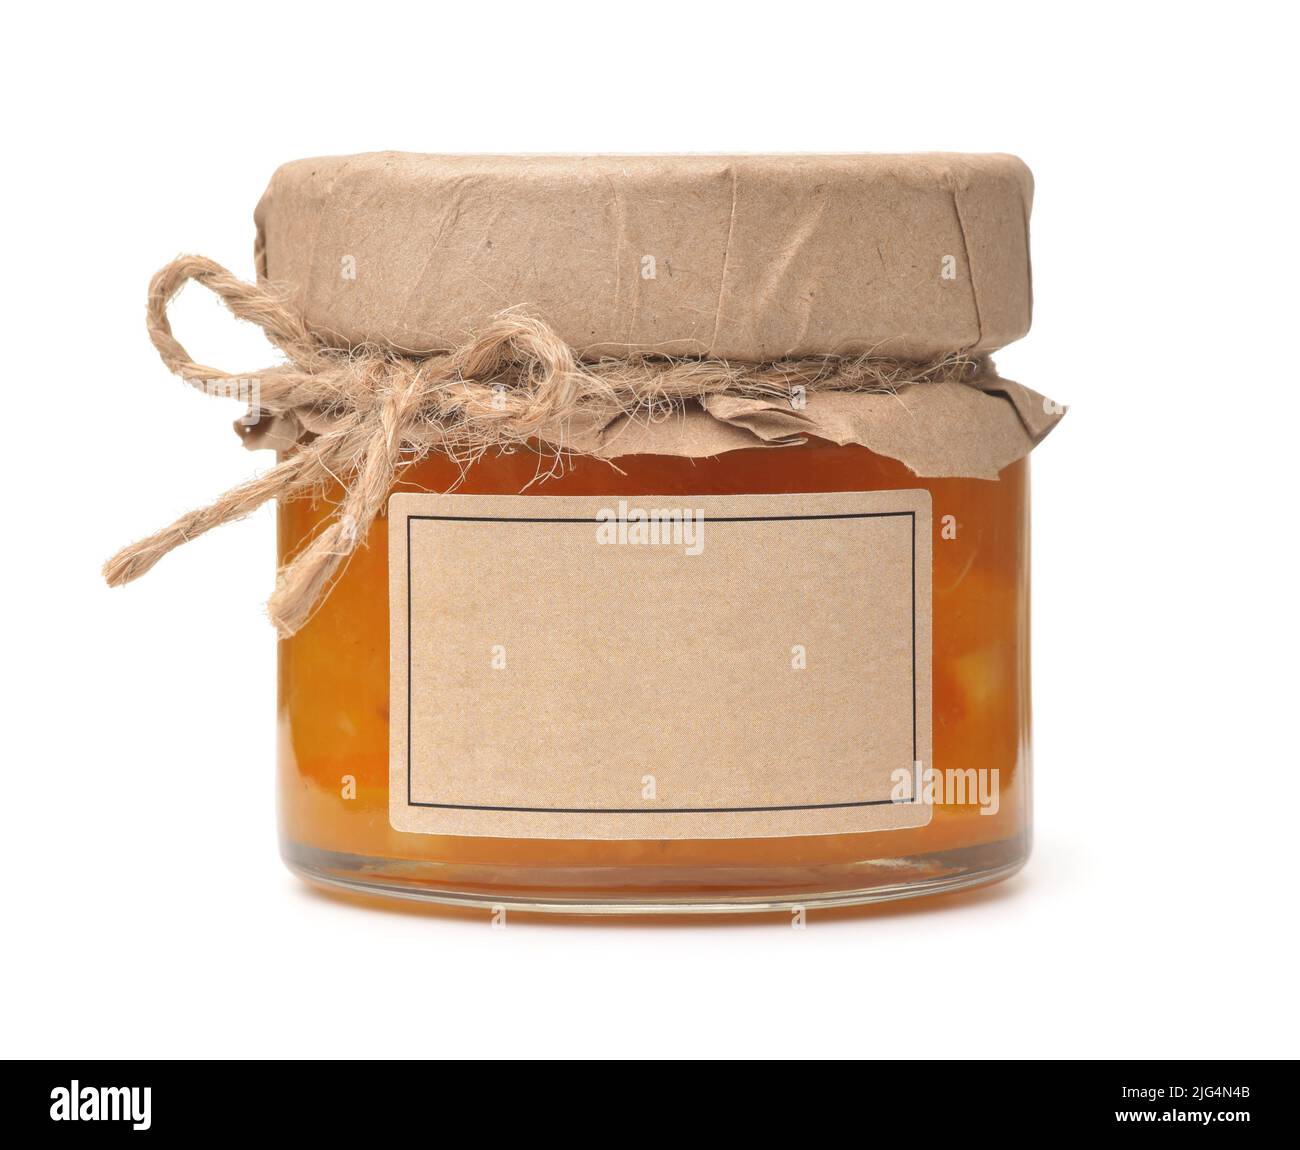 Vue avant du bocal de marmelade orange avec étiquette vierge isolée sur le blanc Banque D'Images